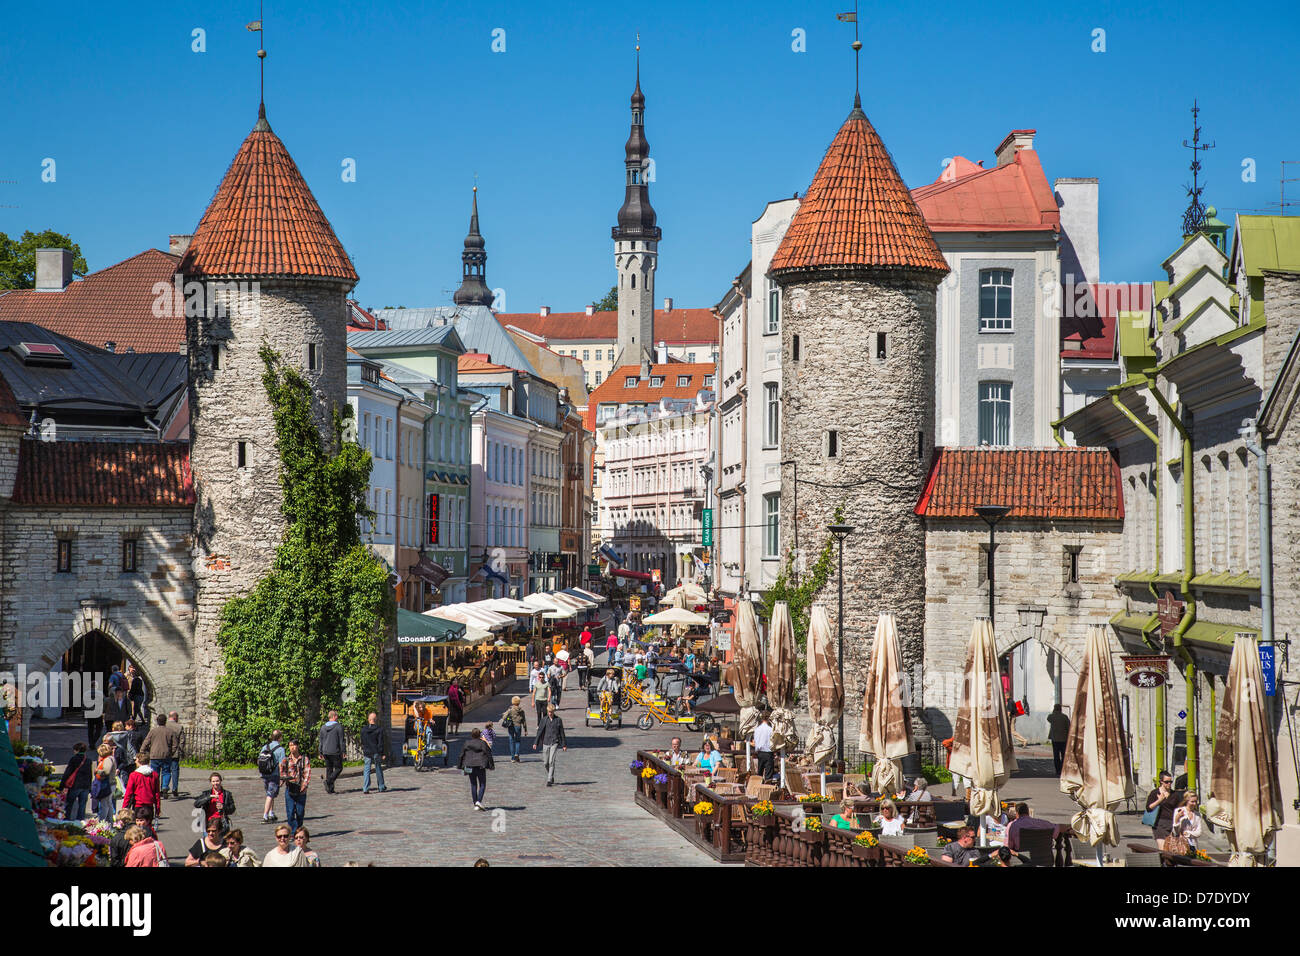 Ciudad vieja de Tallin, Estonia, Viru Street y las torres medievales de la entrada Viru Foto de stock